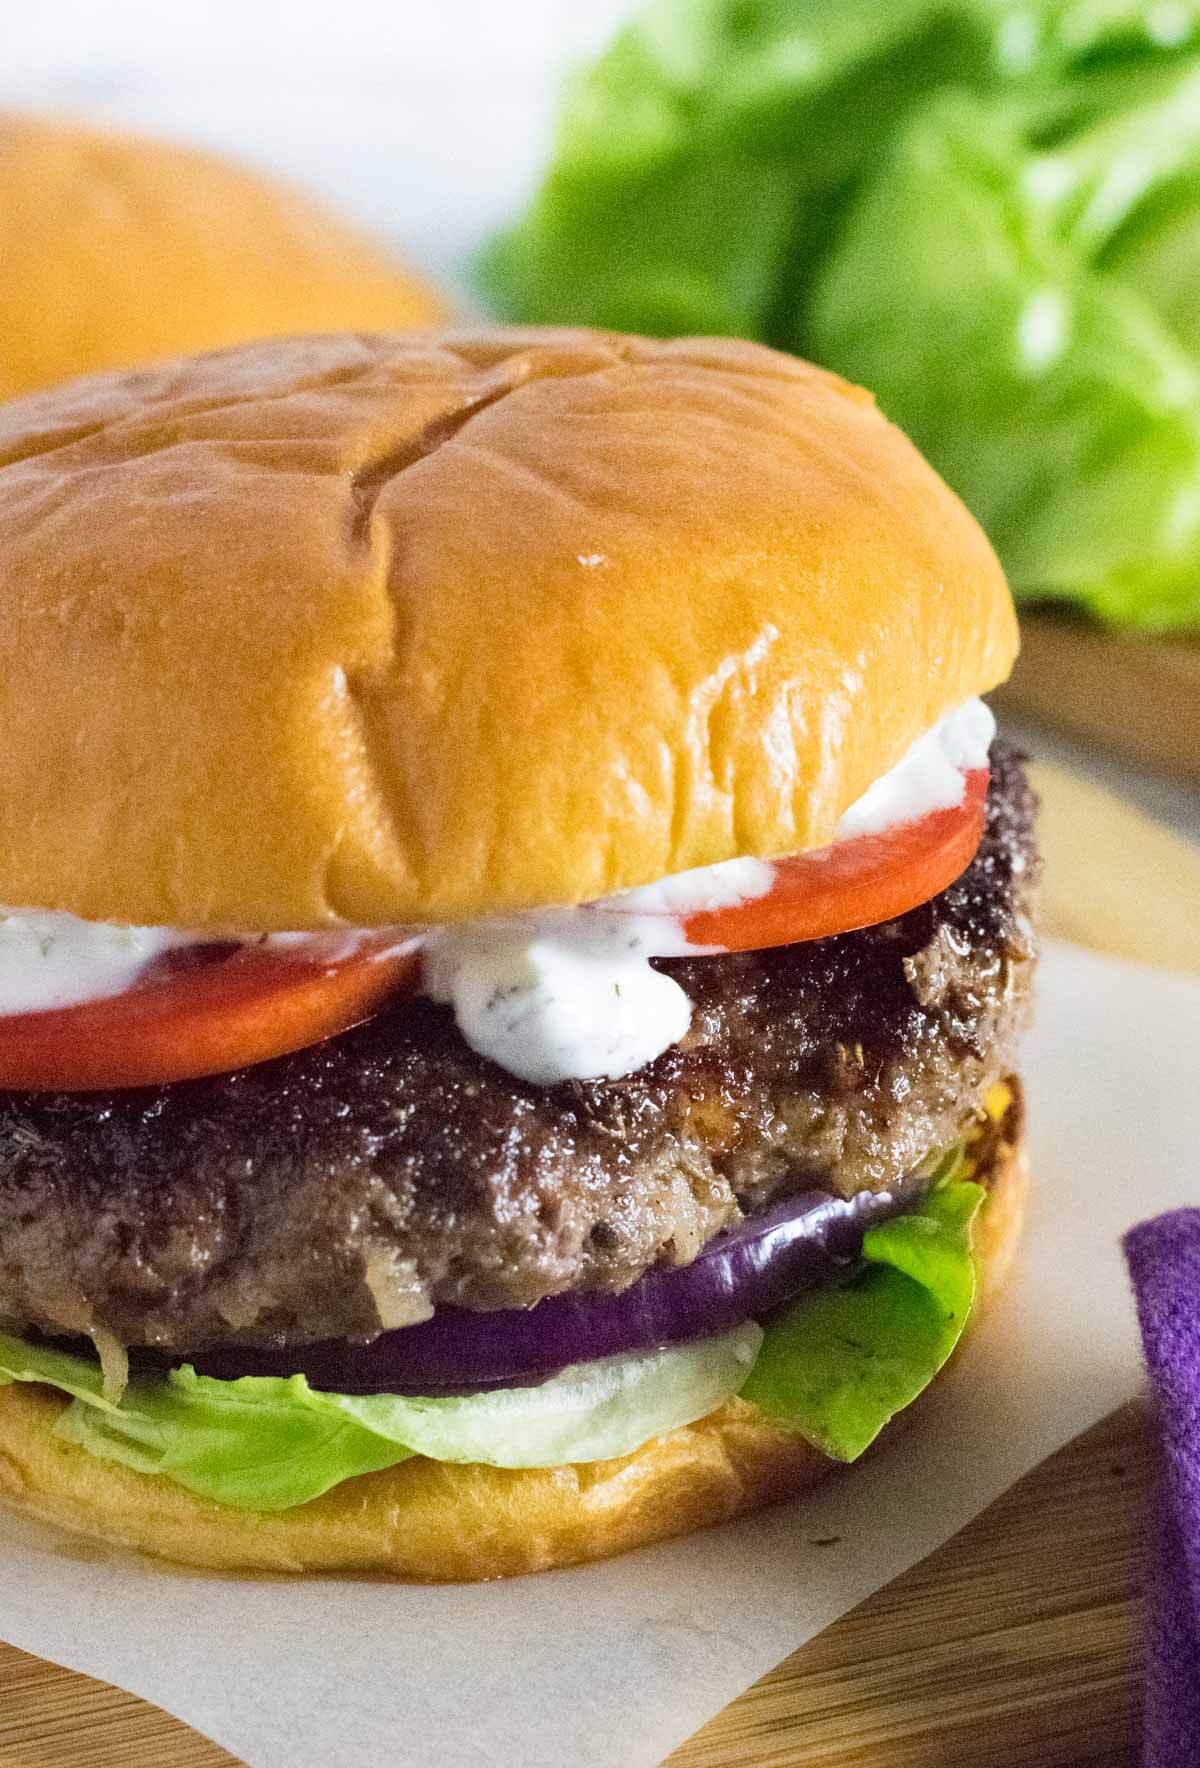 Gryo burger shown close up.